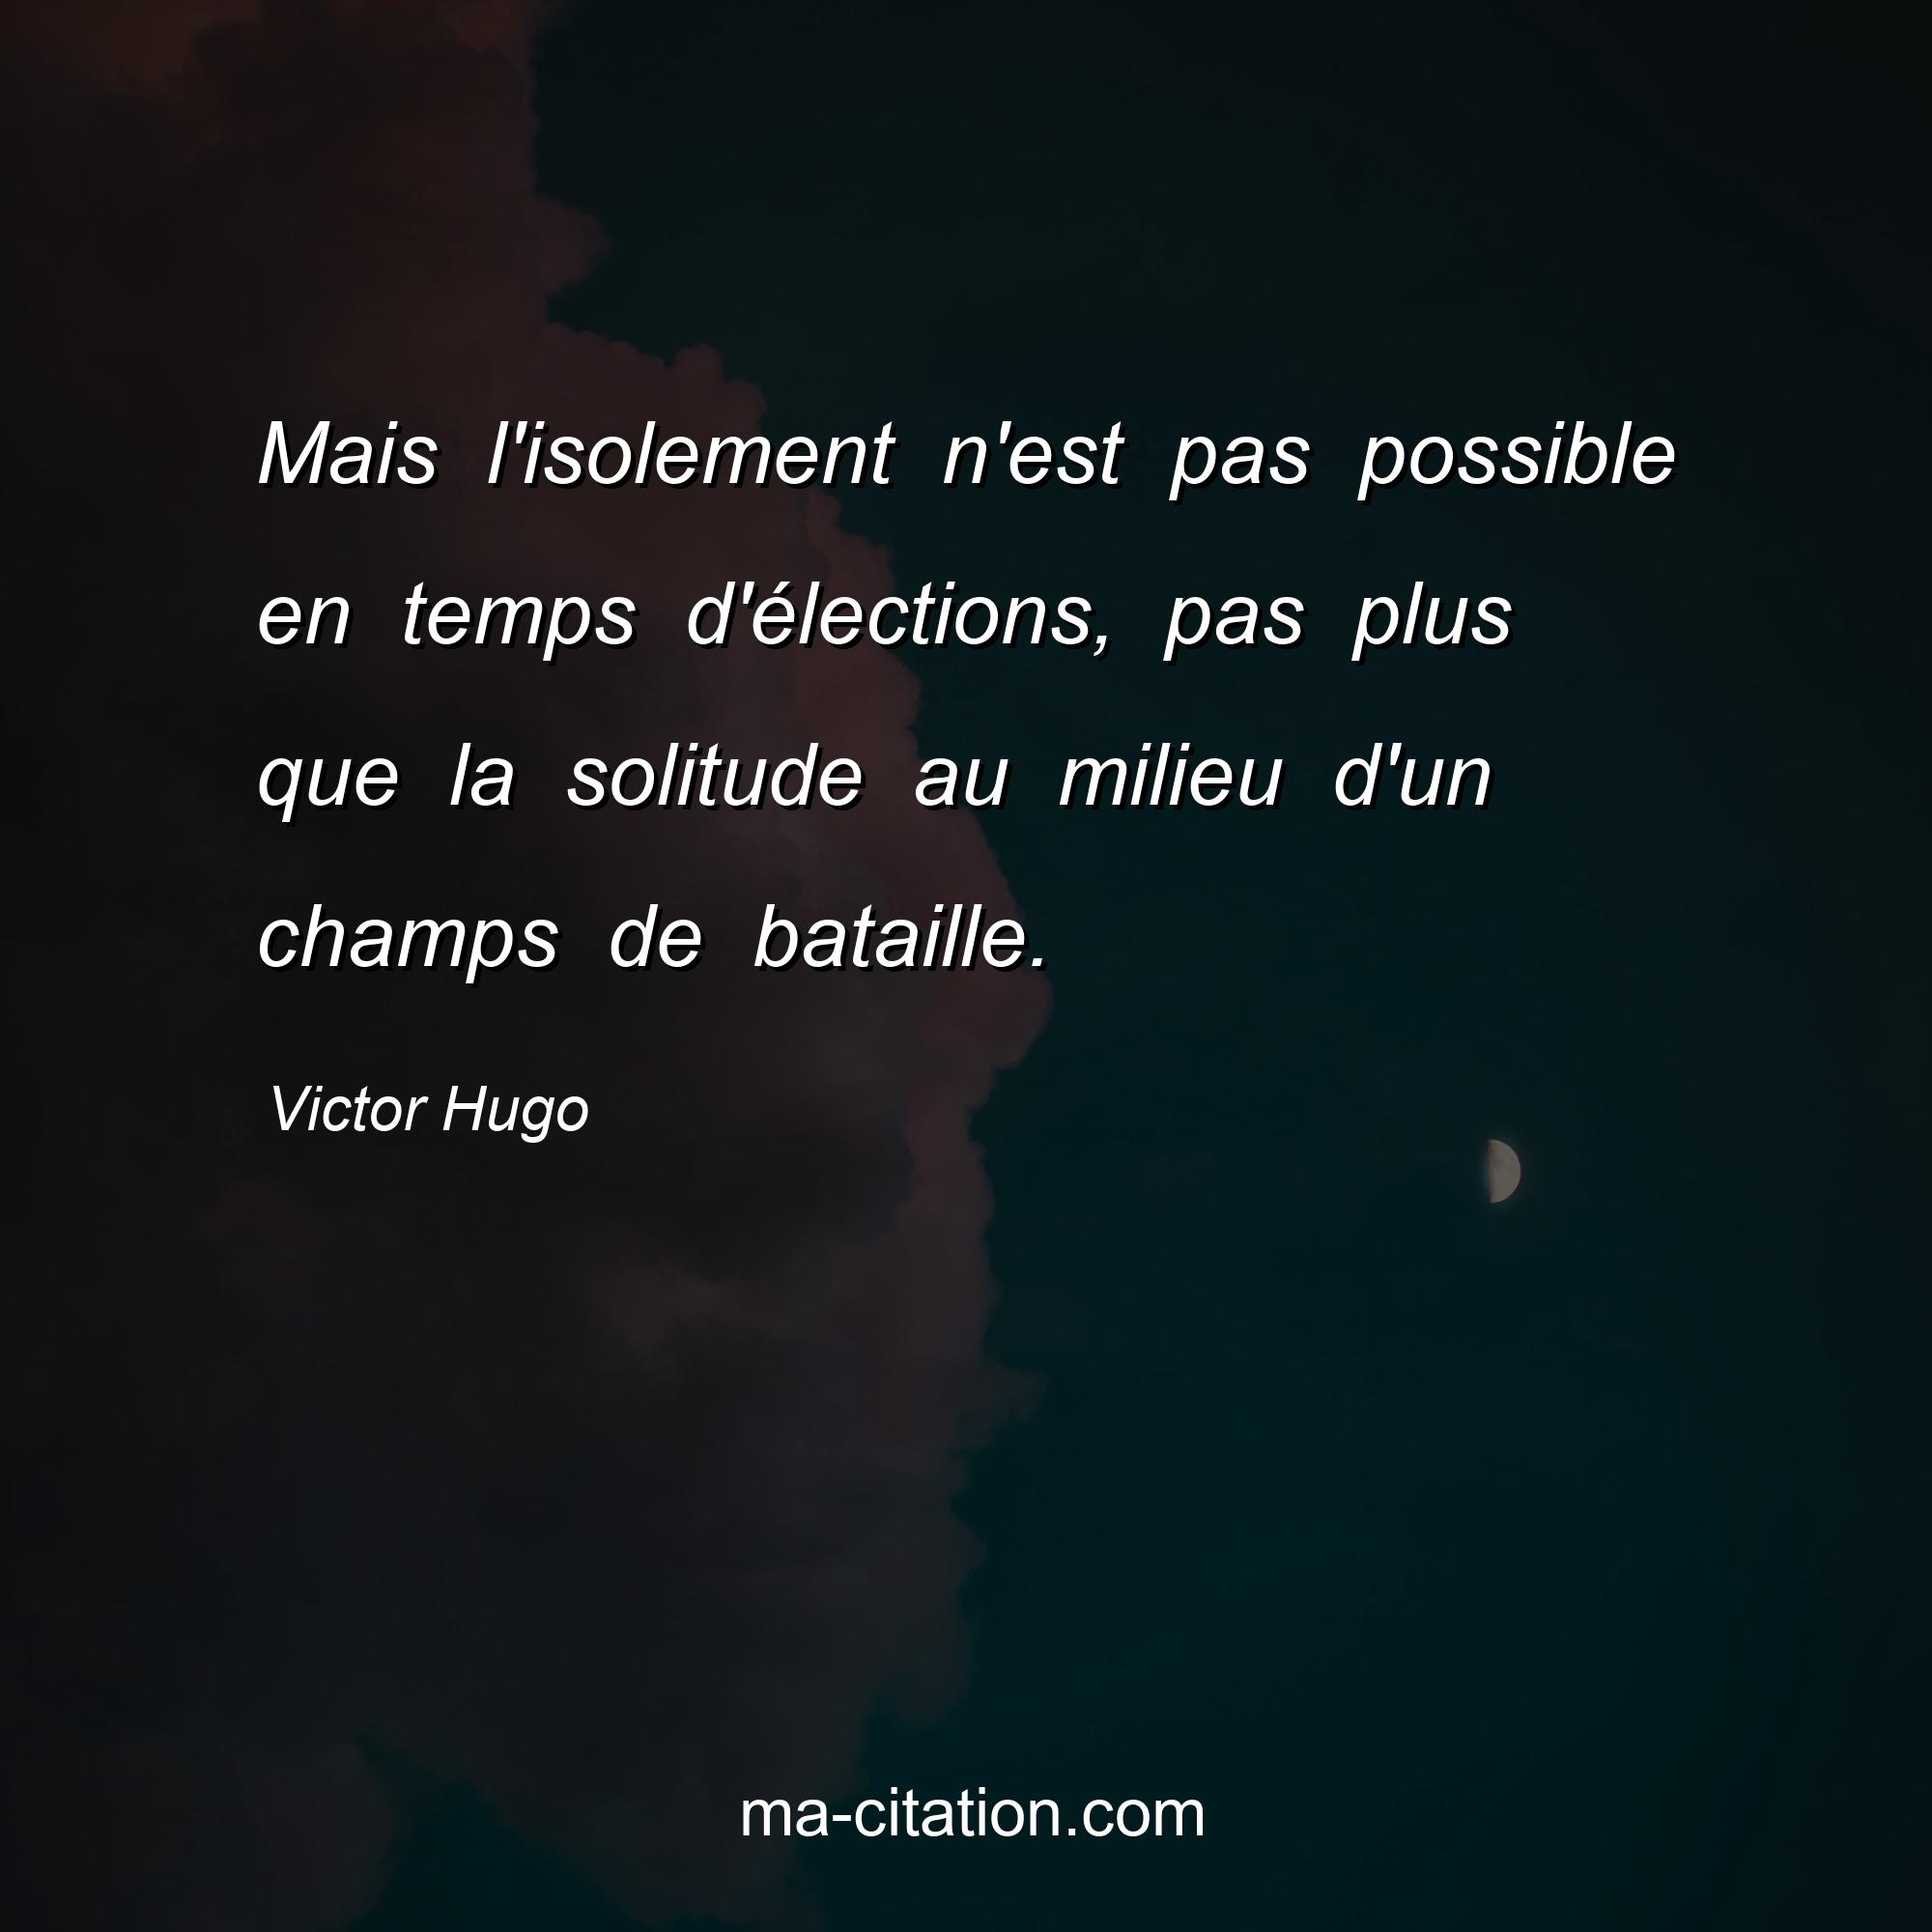 Victor Hugo : Mais l'isolement n'est pas possible en temps d'élections, pas plus que la solitude au milieu d'un champs de bataille.